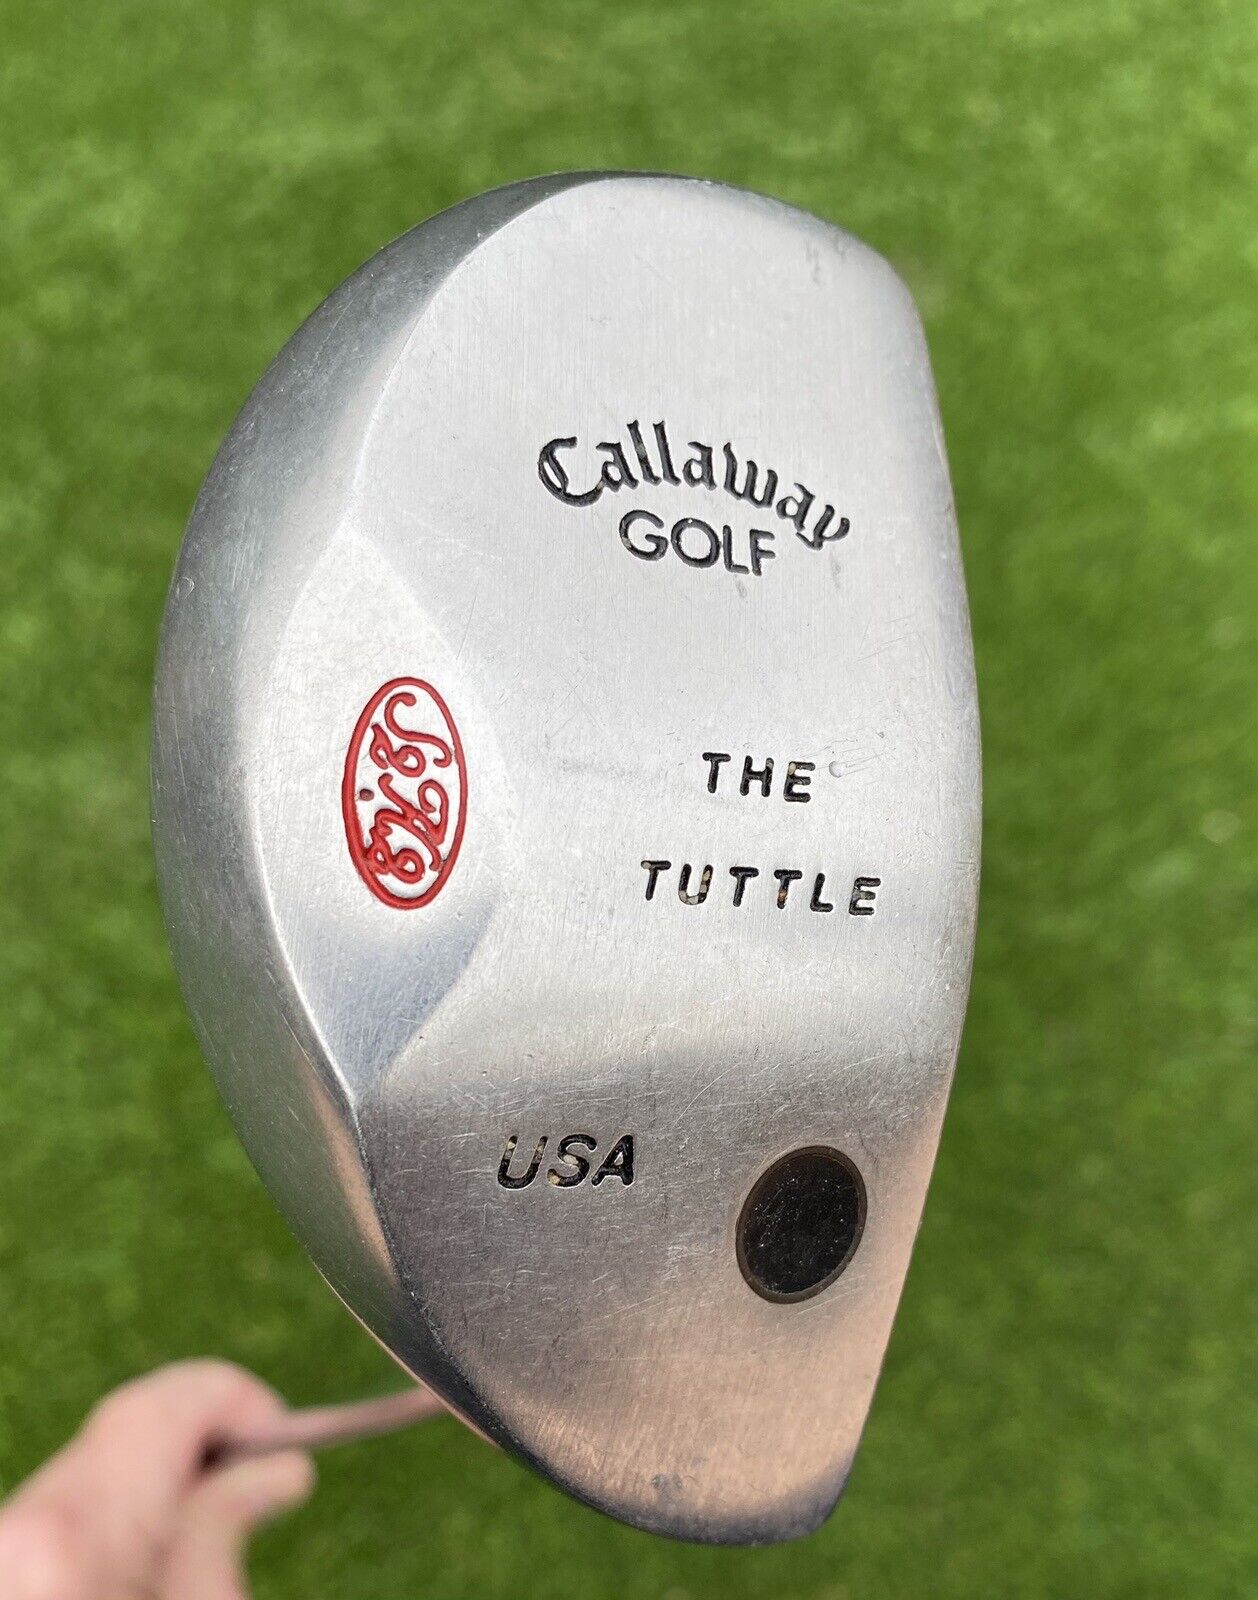 Callaway Golf S2H2 “THE TUTTLE” Putter ~35.5” RH - Steel Shaft and Winn Grip